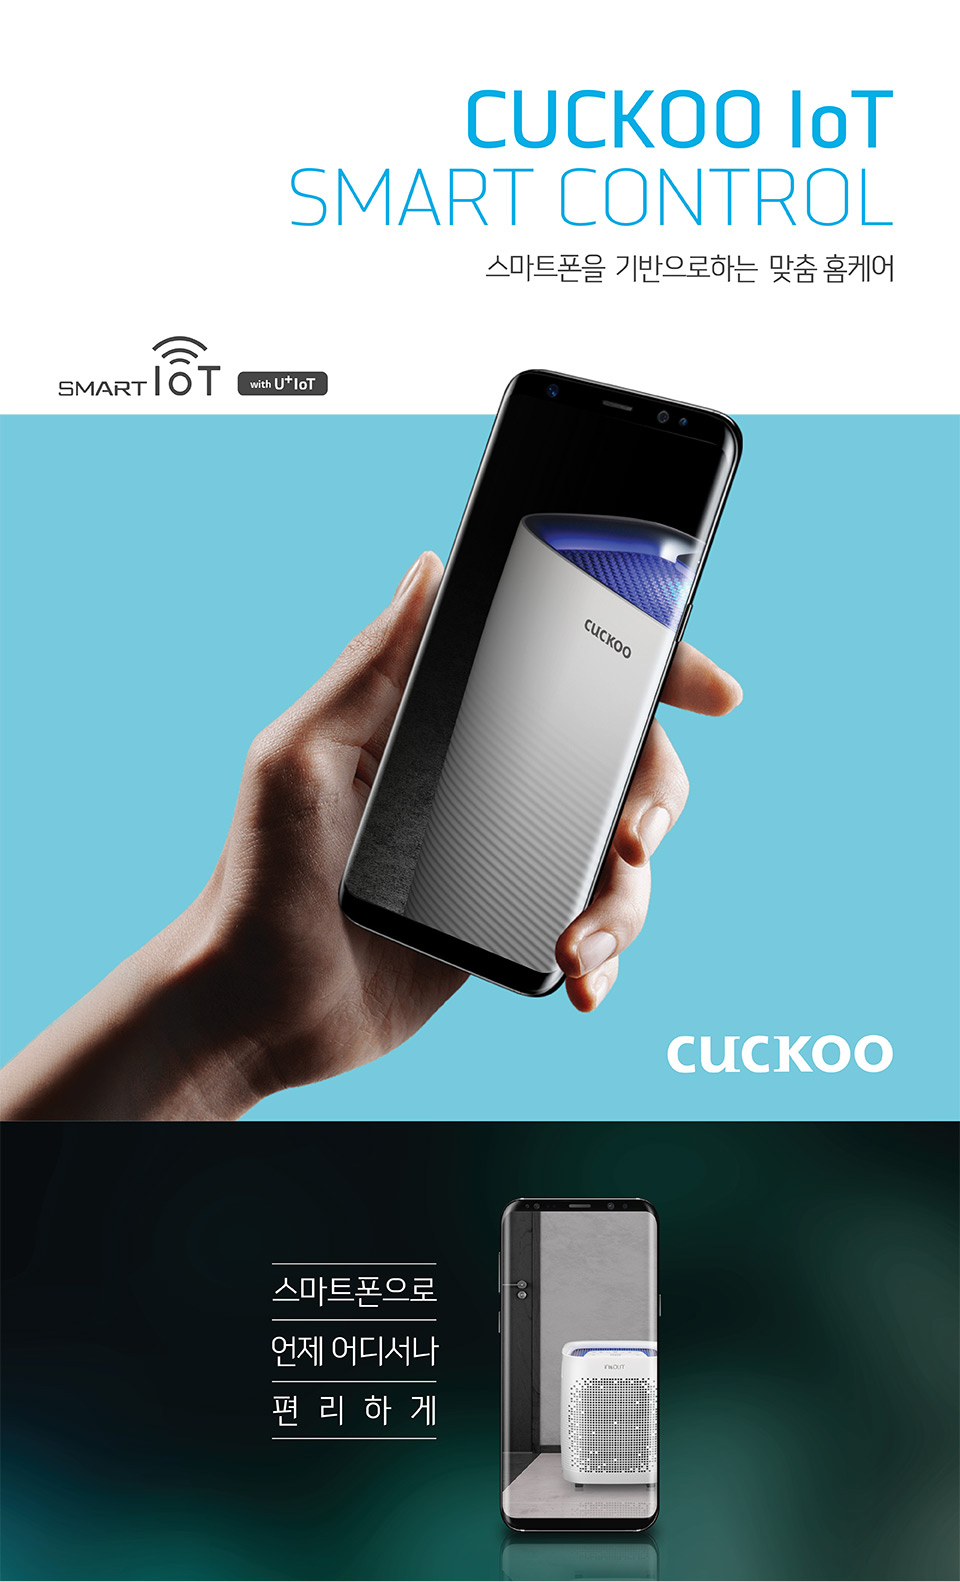 CUCKOO IoT SMART CONTROL, 스마트폰을 기반으로하는 맞춤 홈케어 스마트폰으로 언제 어디서나 편리하게